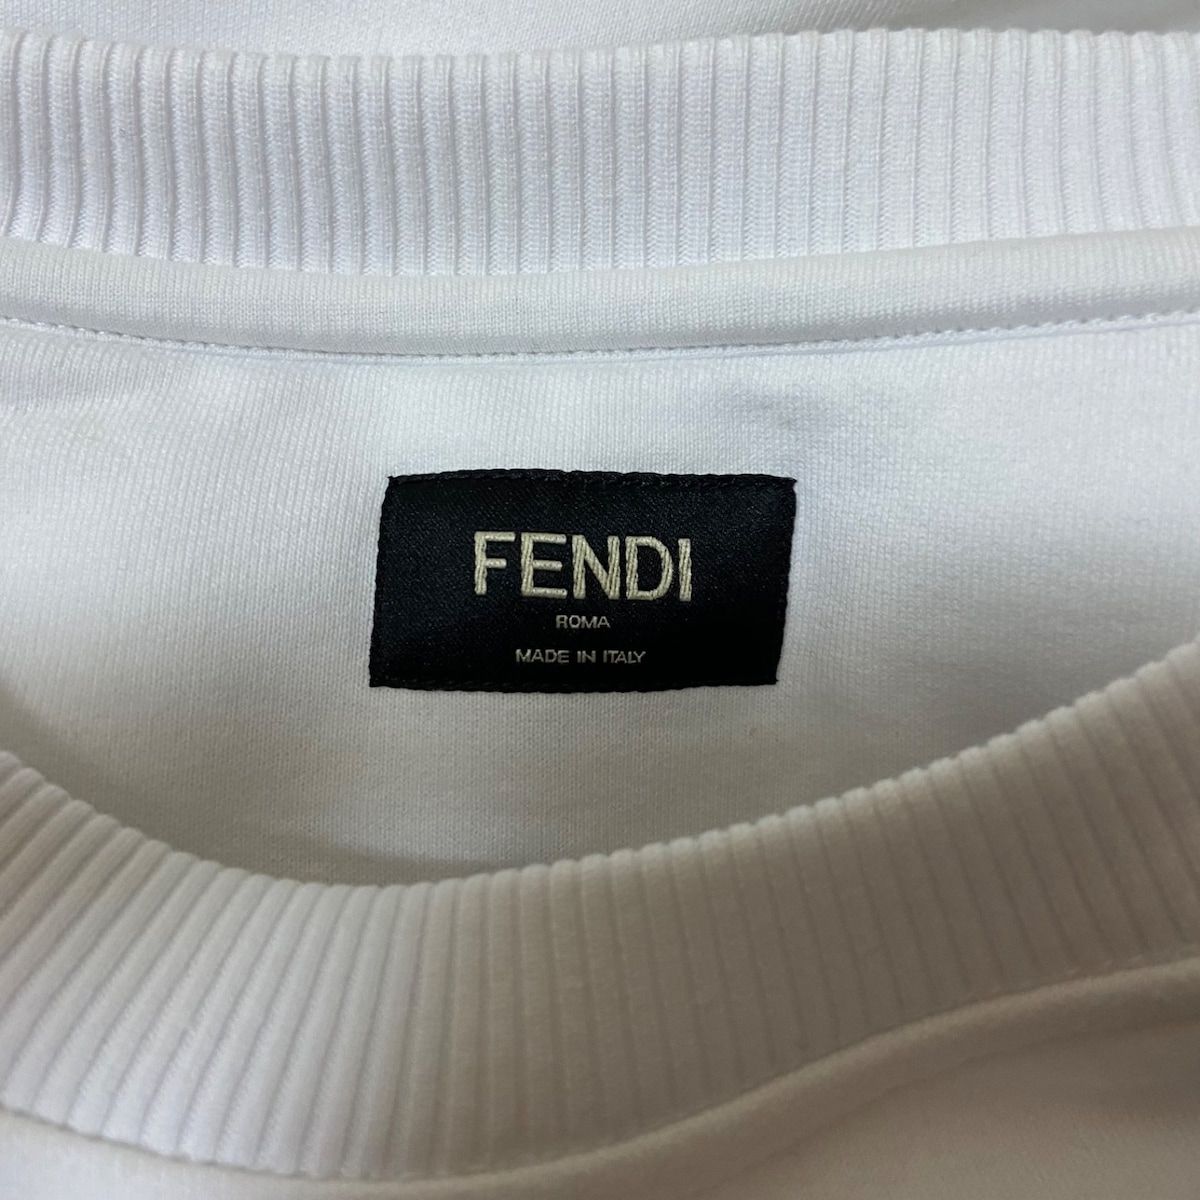 FENDI(フェンディ) トレーナー サイズS メンズ - 白×オレンジ×マルチ ...